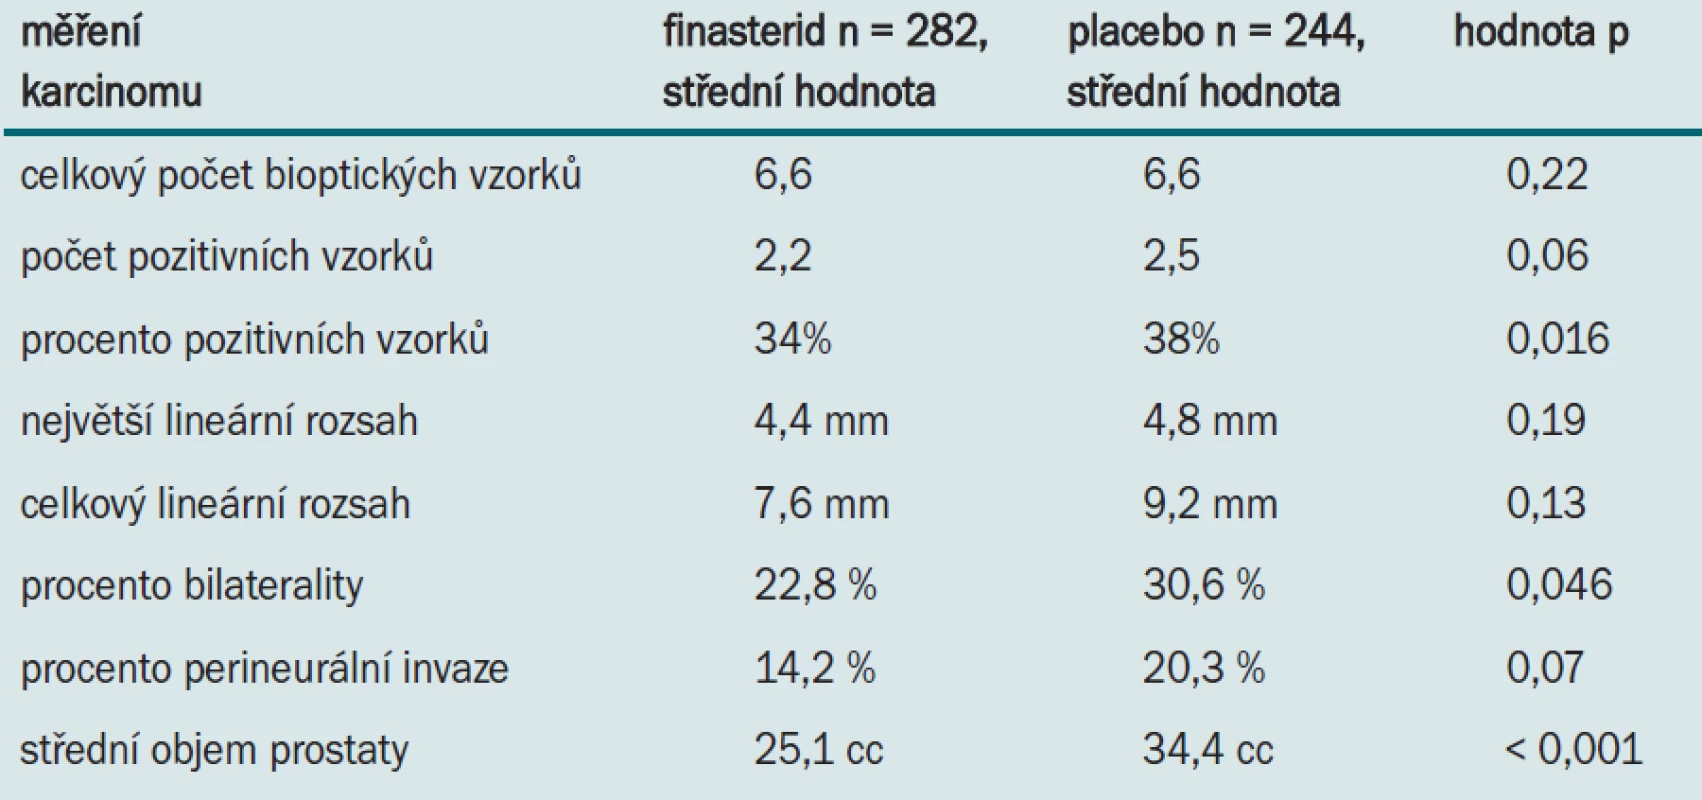 Prognostické znaky u pacientů léčených finasteridem nebo placebem.